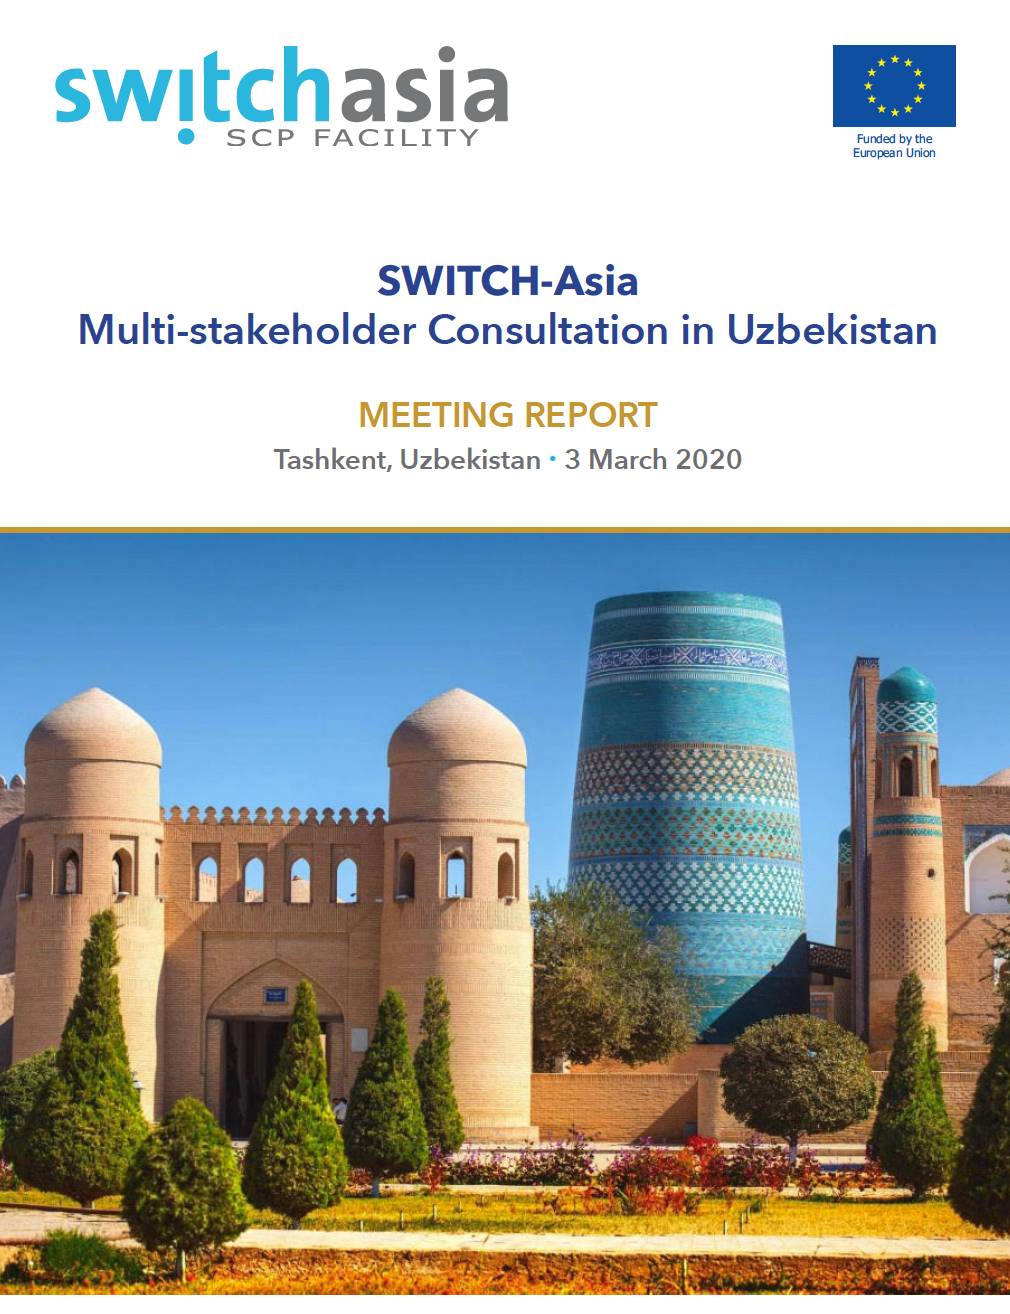 Final Report: Uzbekistan National Multi-stakeholder Consultation